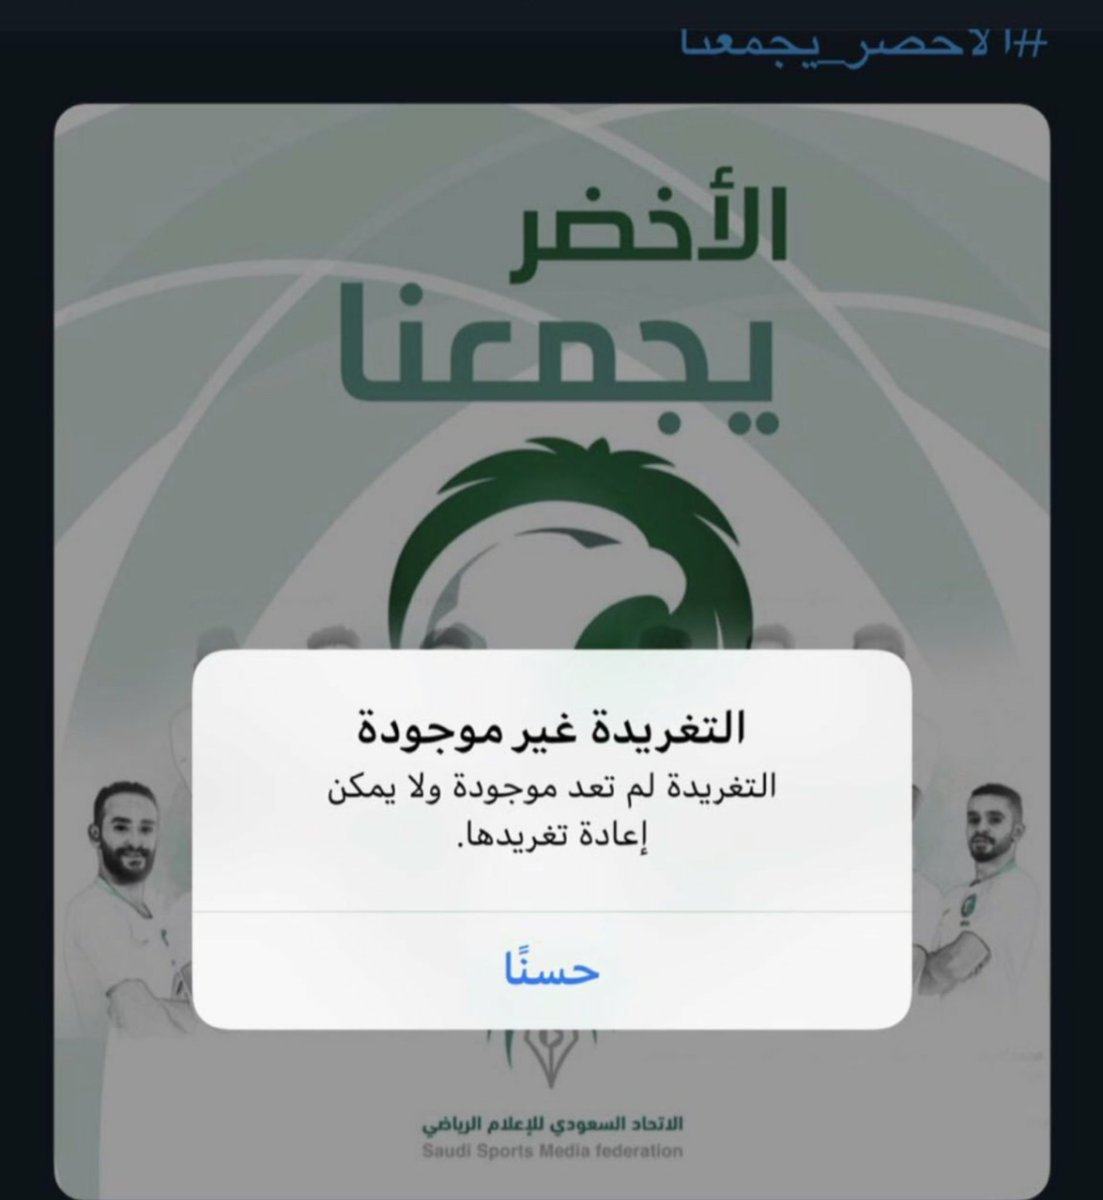 صورة للمنتخب السعودي تثير الجدل على تويتر.. والشعلان: نشكرهم على حذف التغريدة!